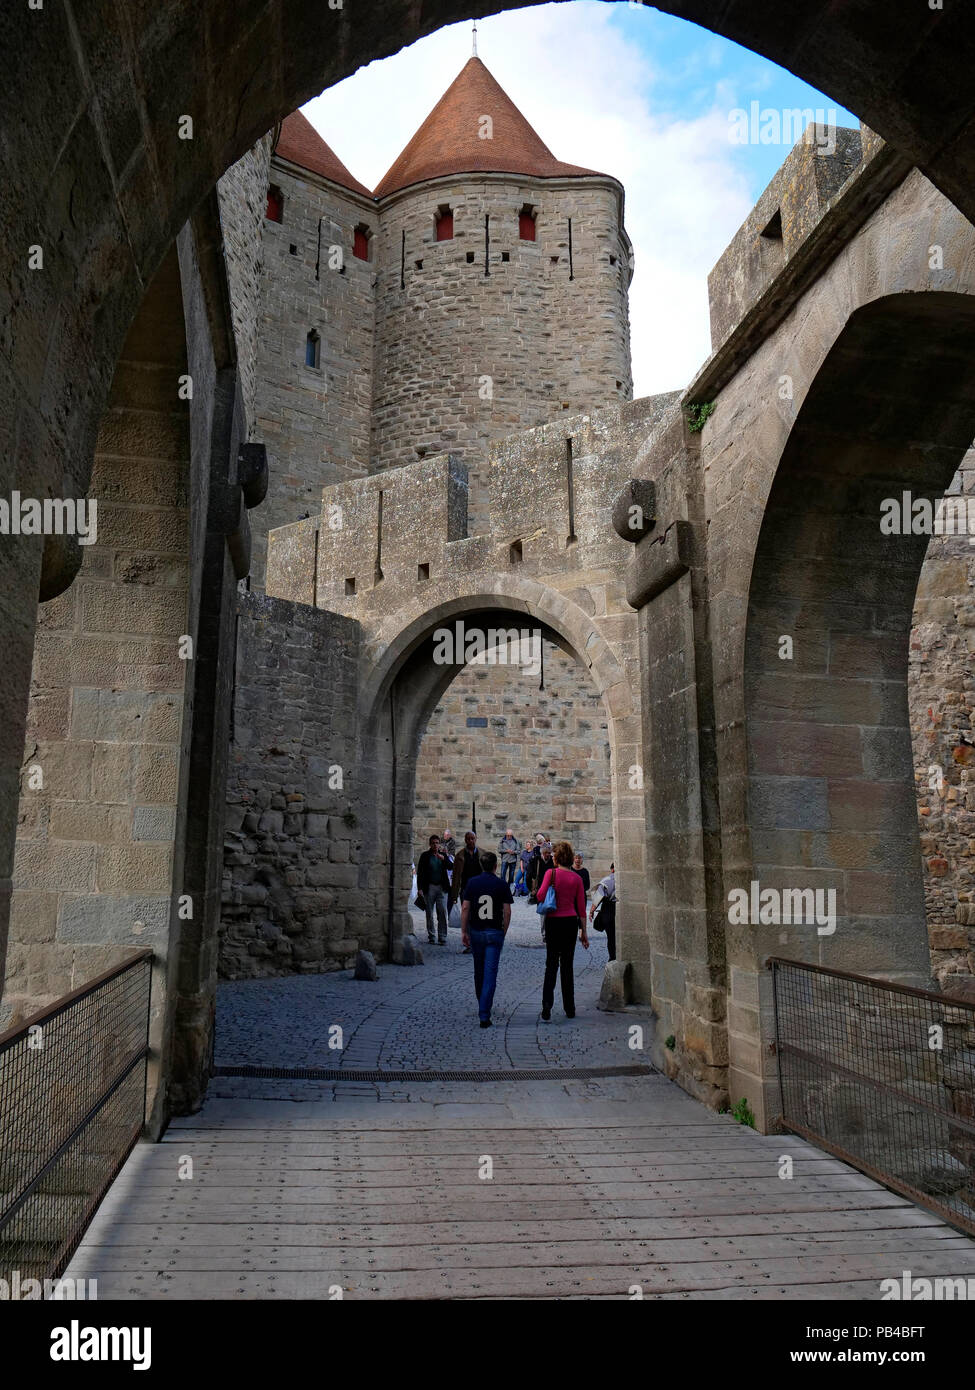 Les remparts de la cité de Carcassonne sur l'Aude et Canal du Midi, dans le sud de la France Banque D'Images